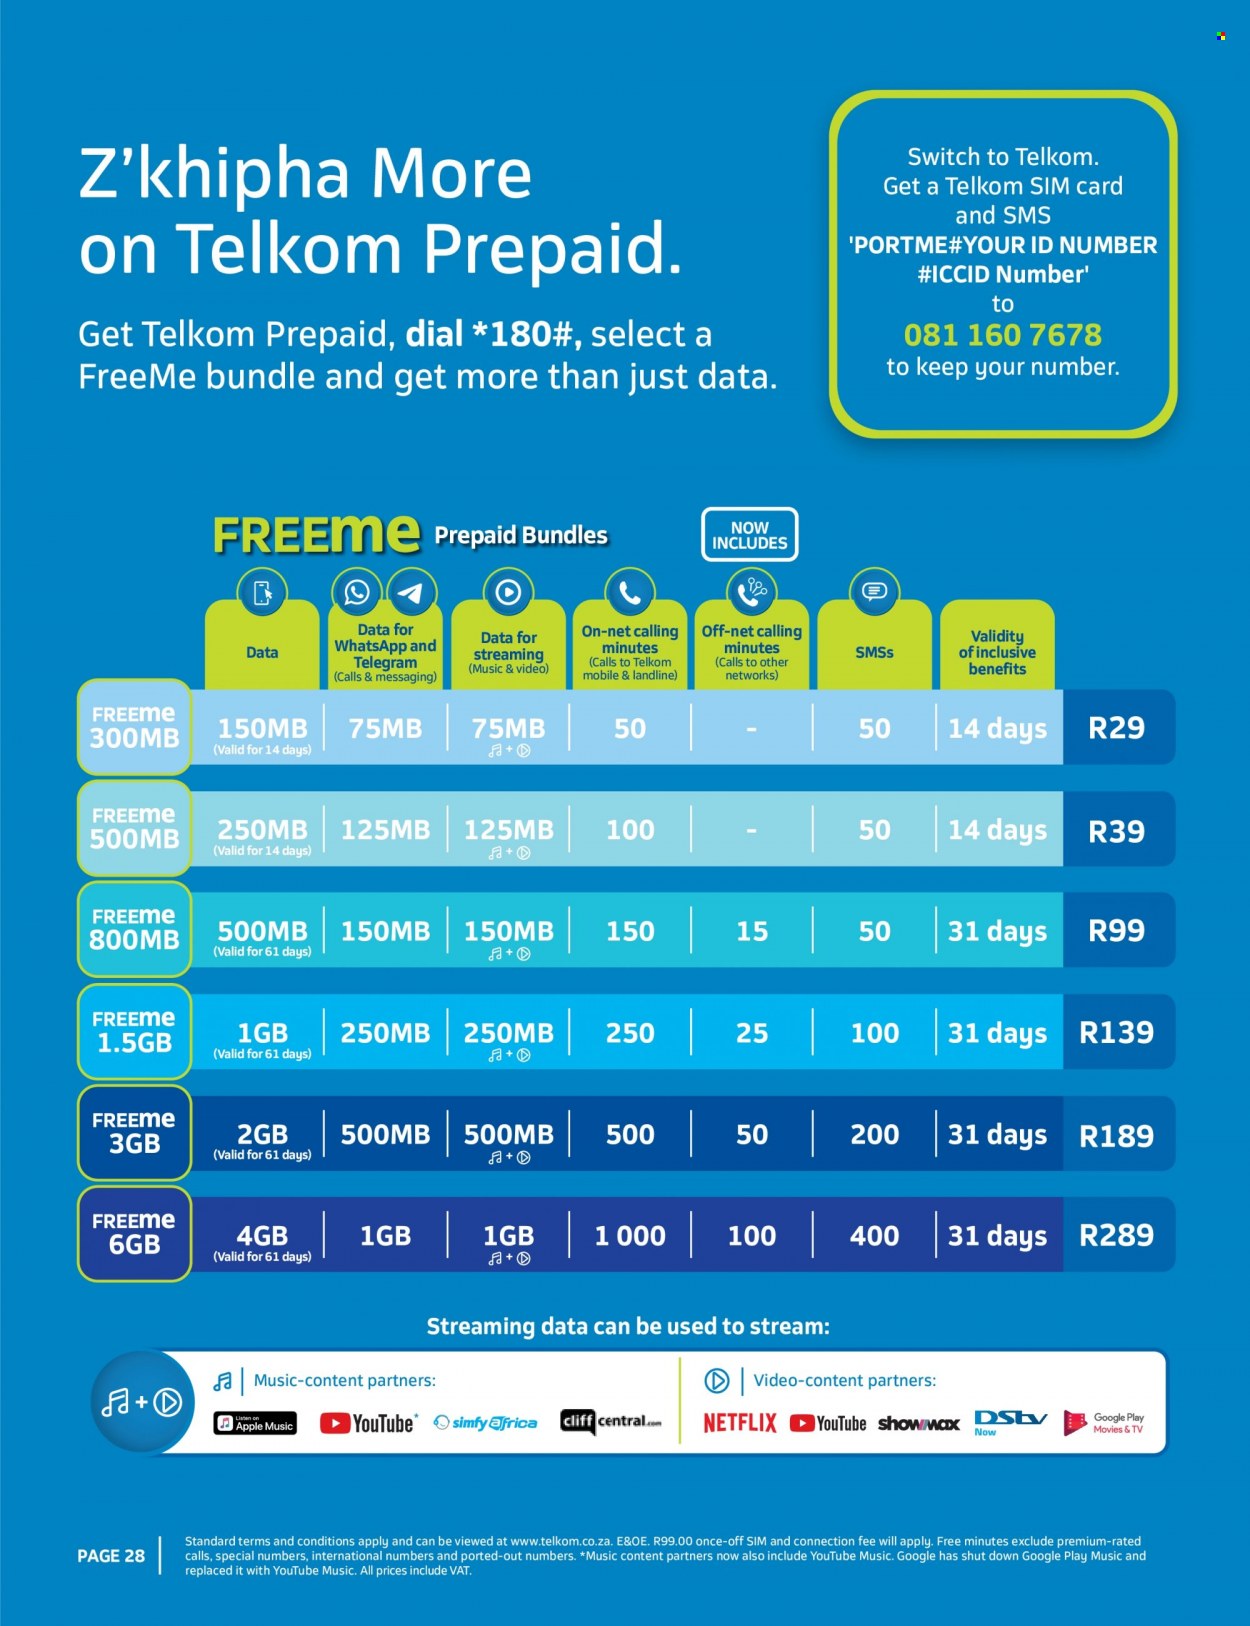 Telkom specials - 10.03.2021 - 11.30.2021. 